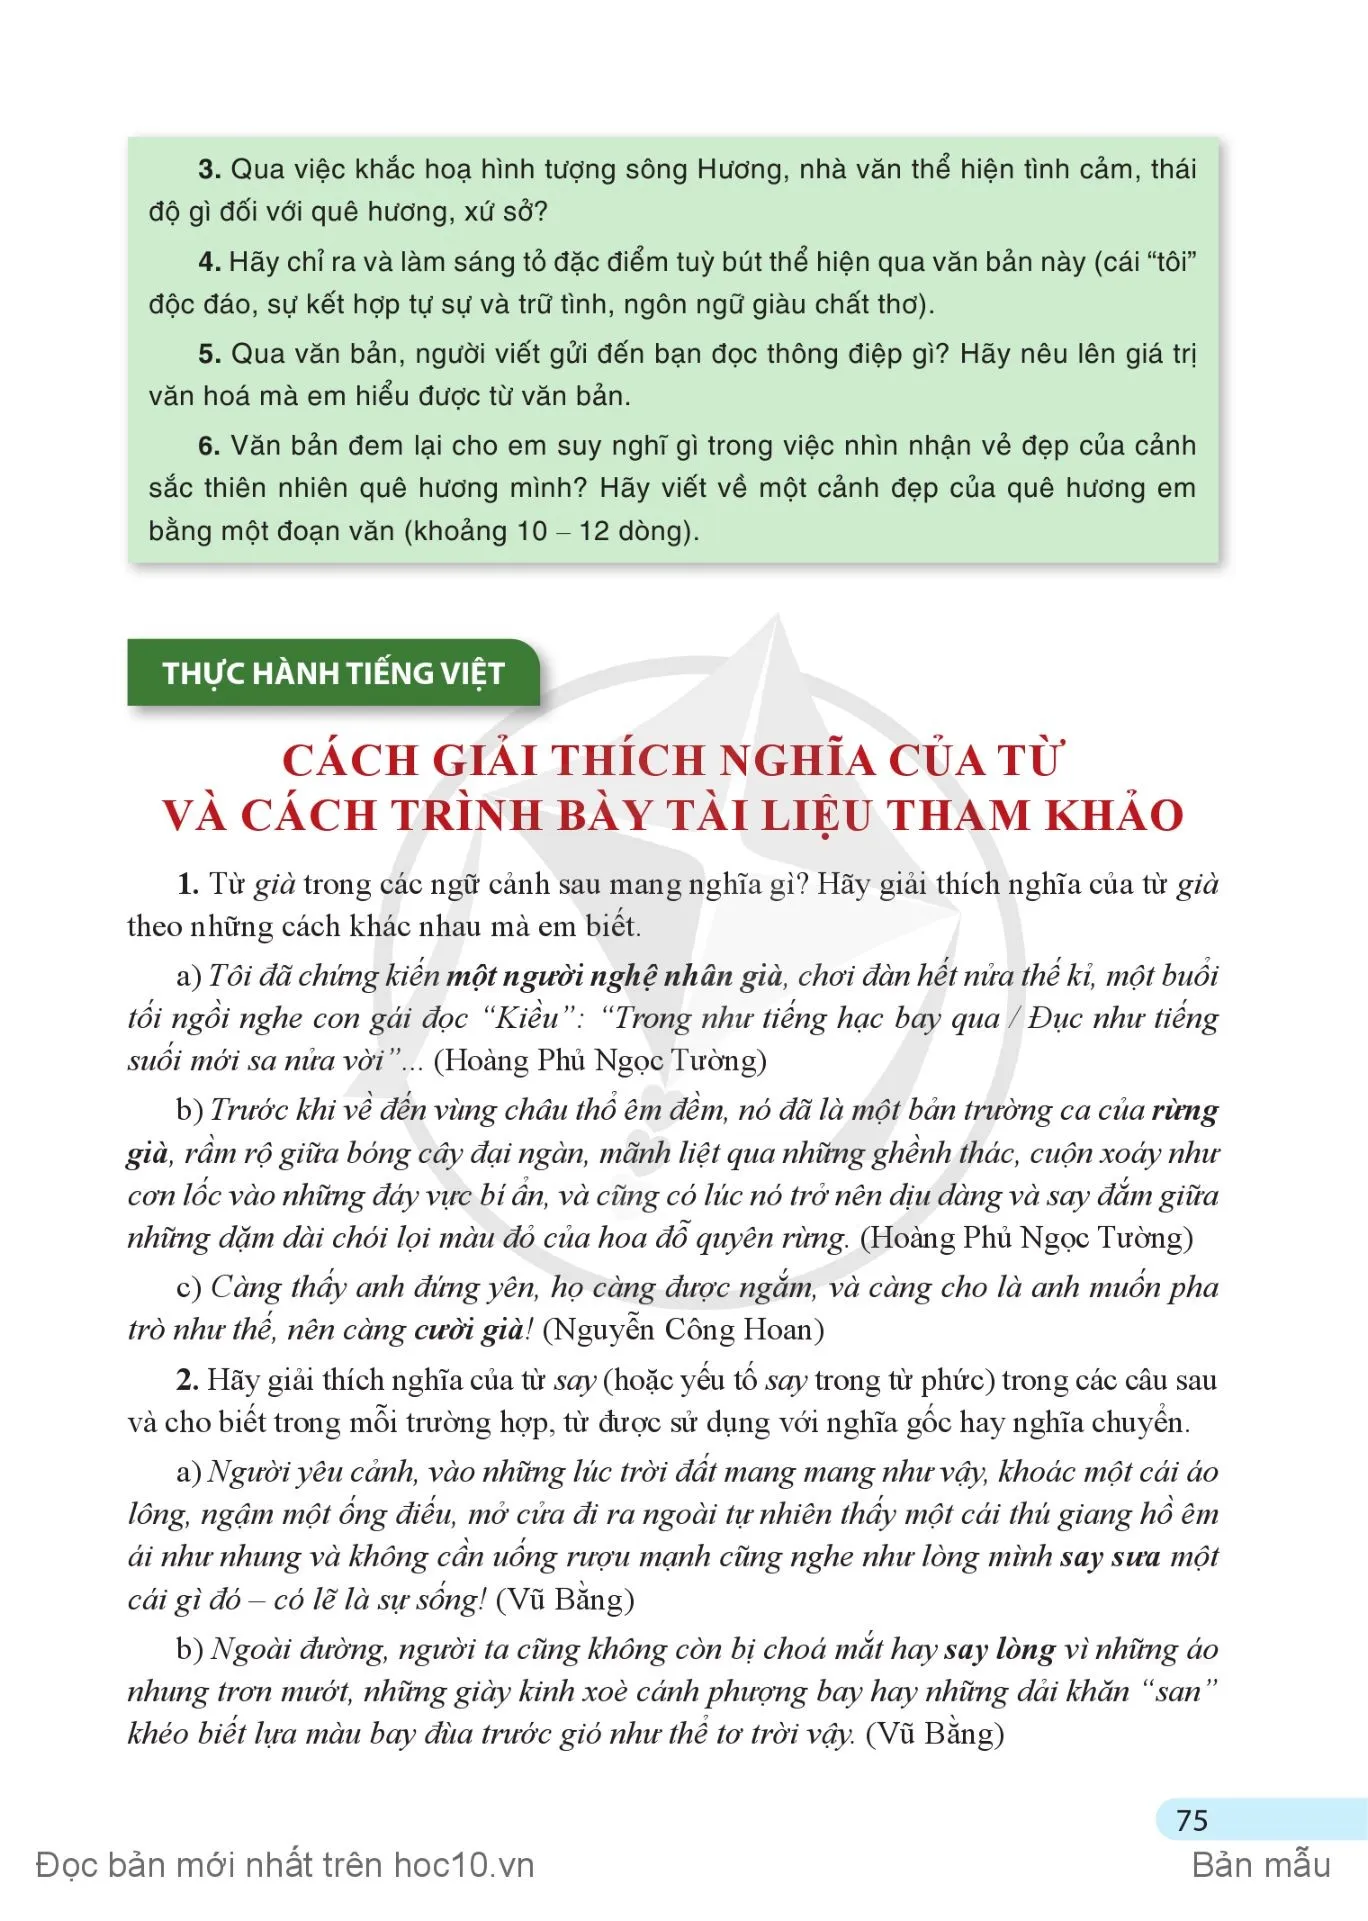 Thực hành tiếng Việt: Cách giải thích nghĩa của từ và cách trình bày tài liệu tham khảo